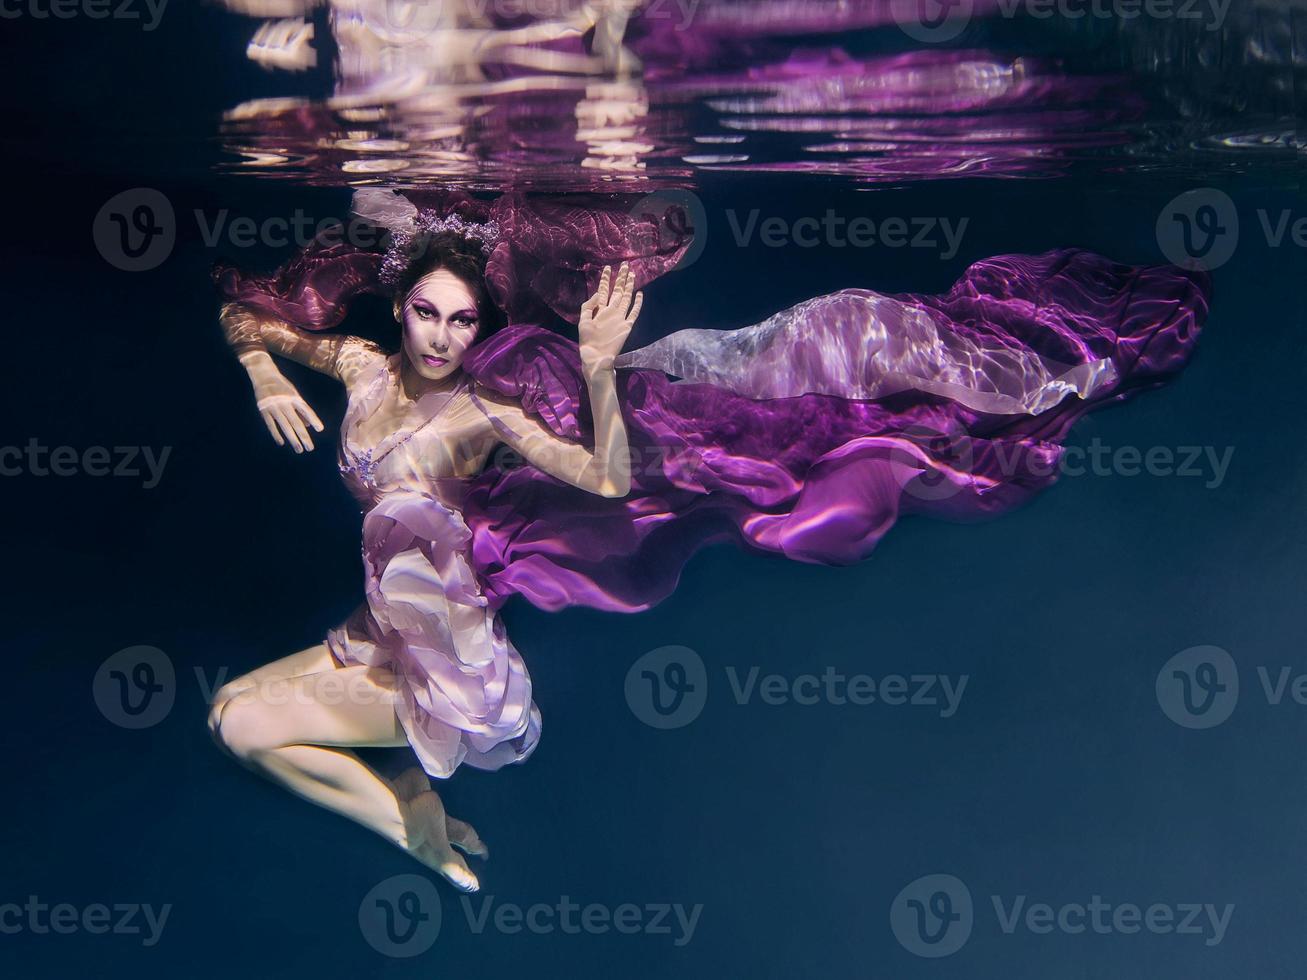 mulher com roupas coloridas no fundo escuro nadando debaixo d'água foto